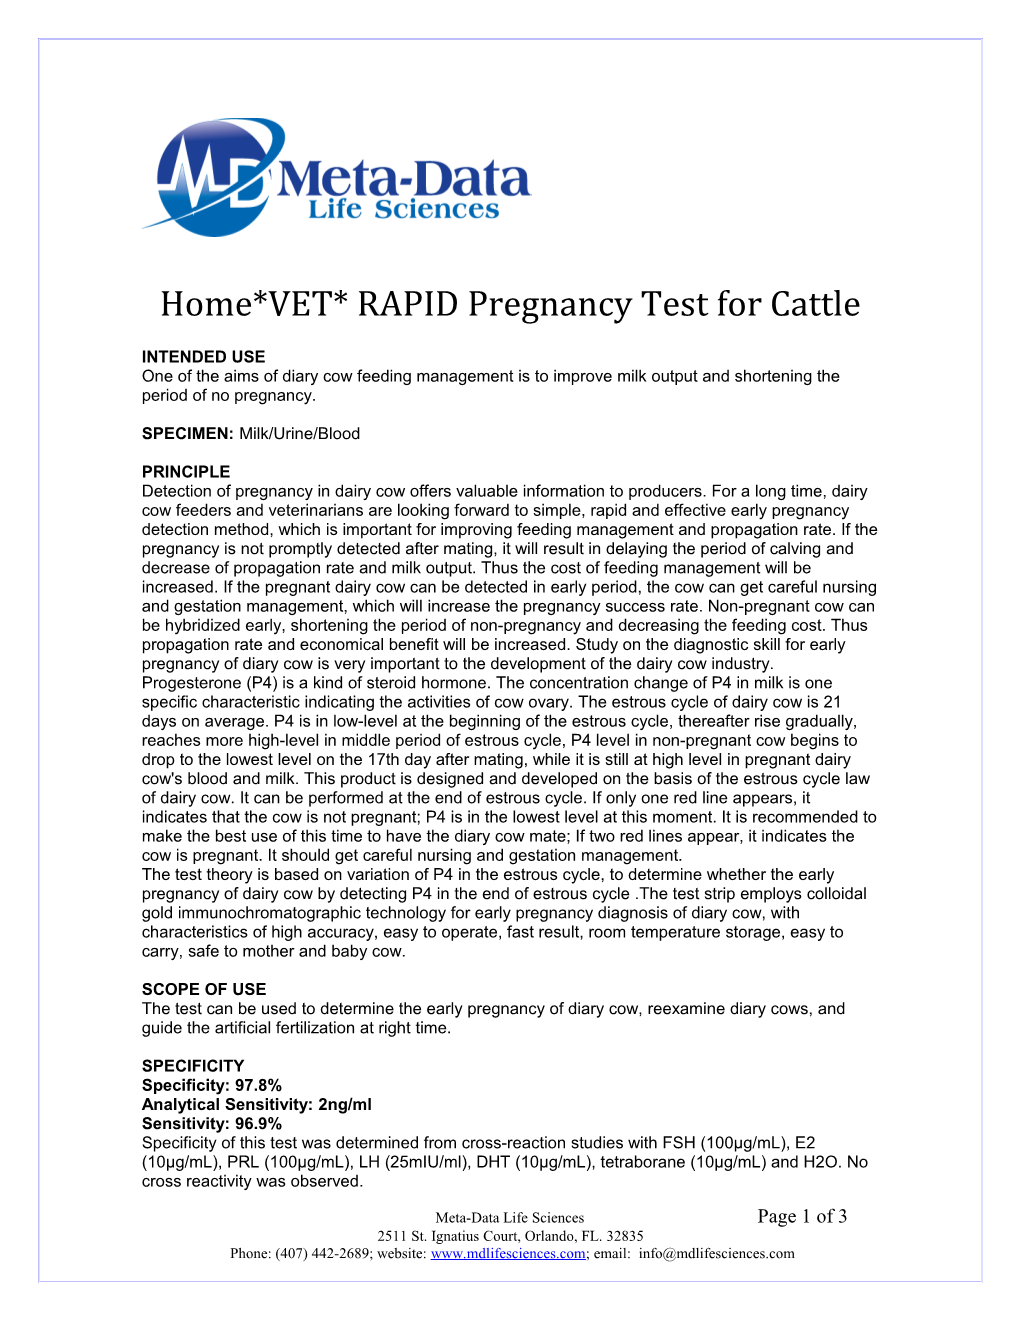 Home*VET* RAPID Pregnancy Test for Cattle